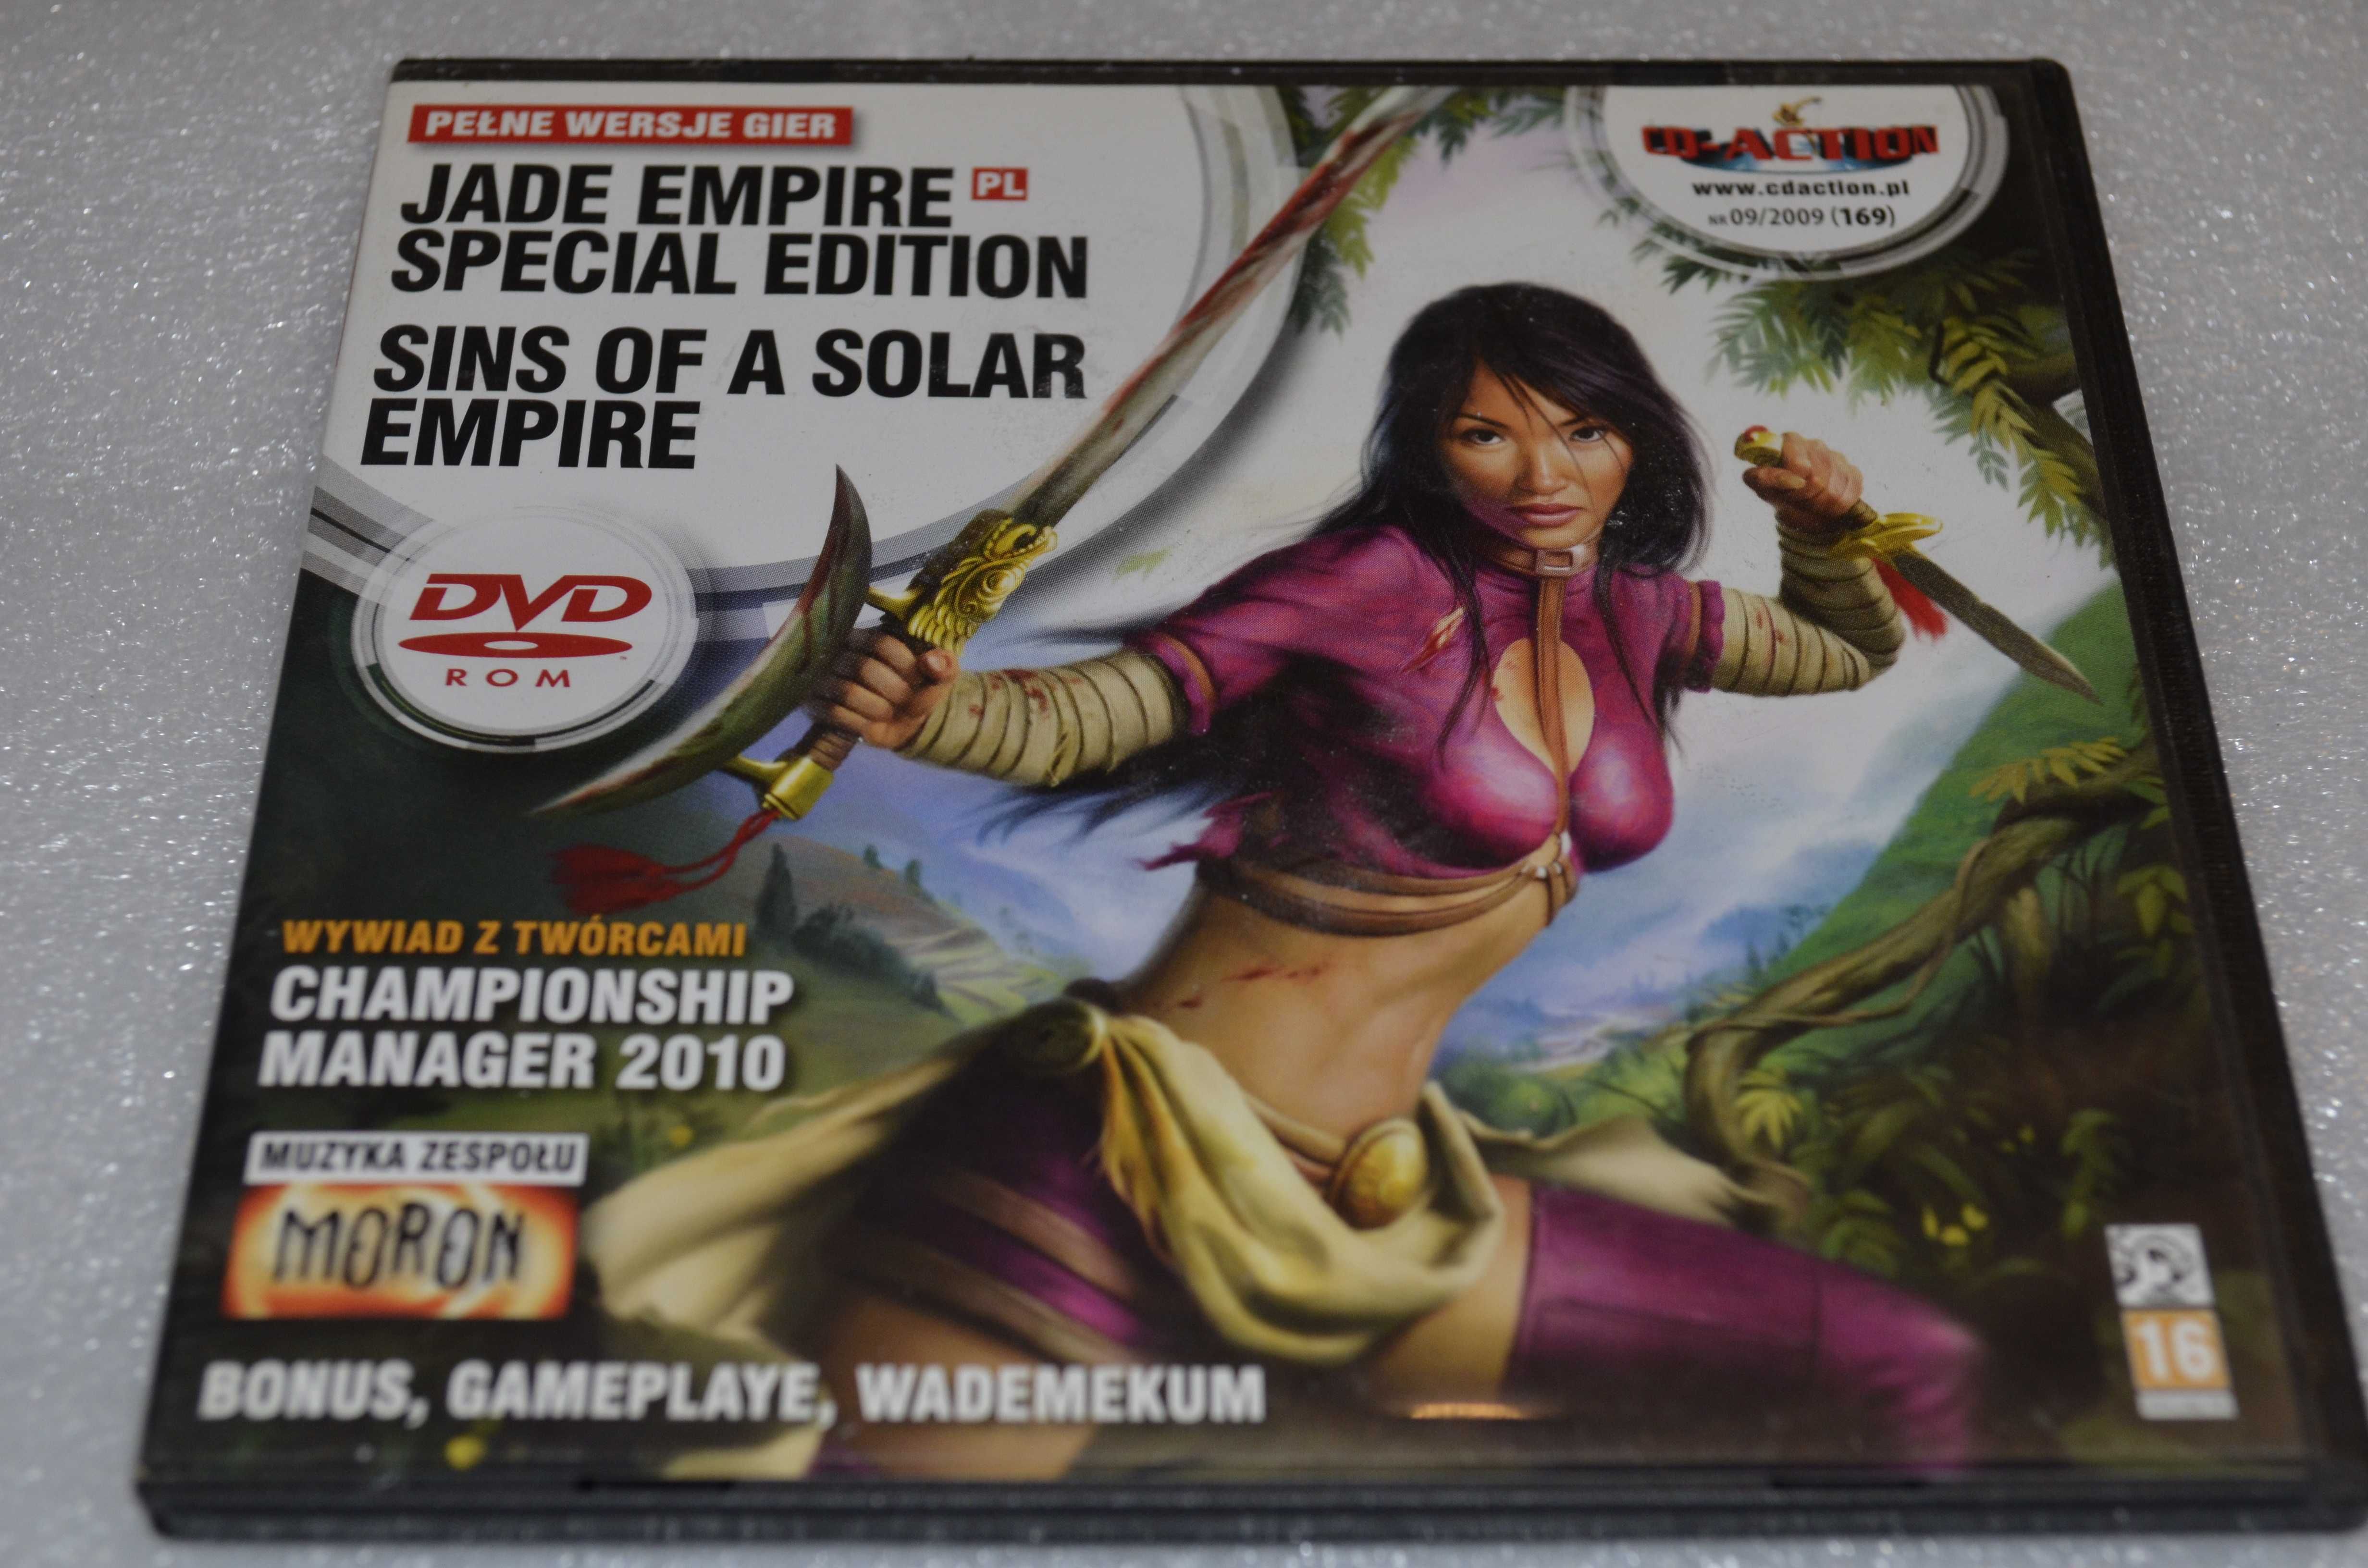 Special Edition, Jade Empire Special Edition, Sins of A Solar Empire